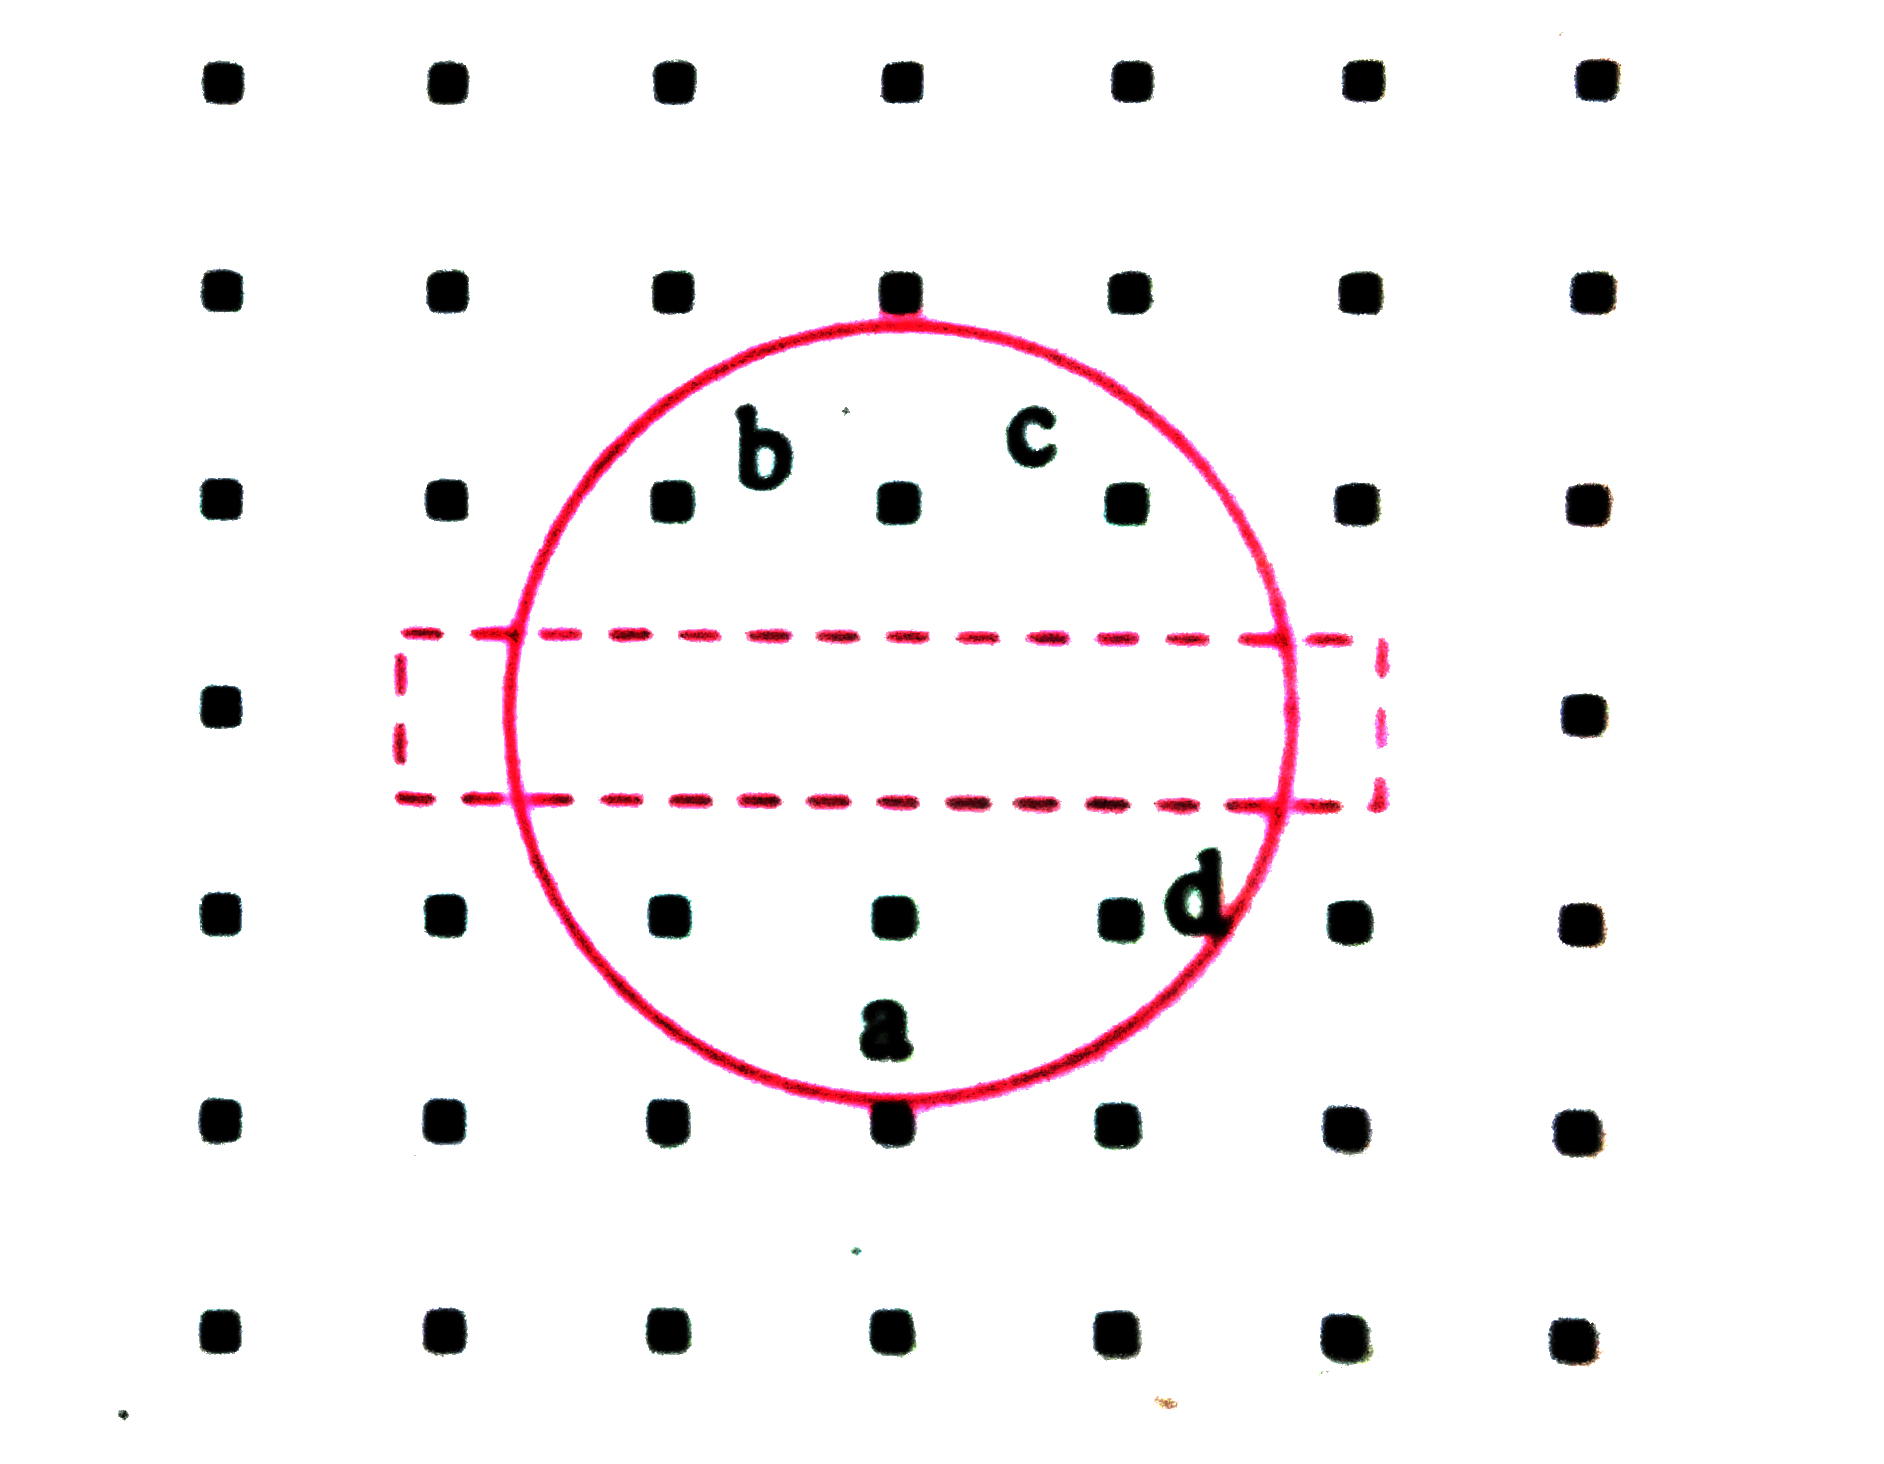 चित्र में एक वृतीय लूप प्रदर्शित किया गया है । यदि उसे एक संकीर्ण  तार में परिवर्तित  किया जाये तो बताइये प्रेरित धारा  की दिशा  क्या होगी ? यदि चुम्बकीय क्षेत्र  कागज के तल  के लंबवत ऊपर की ओर कार्य करे । ( चुम्बकीय क्षेत्र  को बिन्दूदार रेखा से प्रदर्शित किया गया है ।)